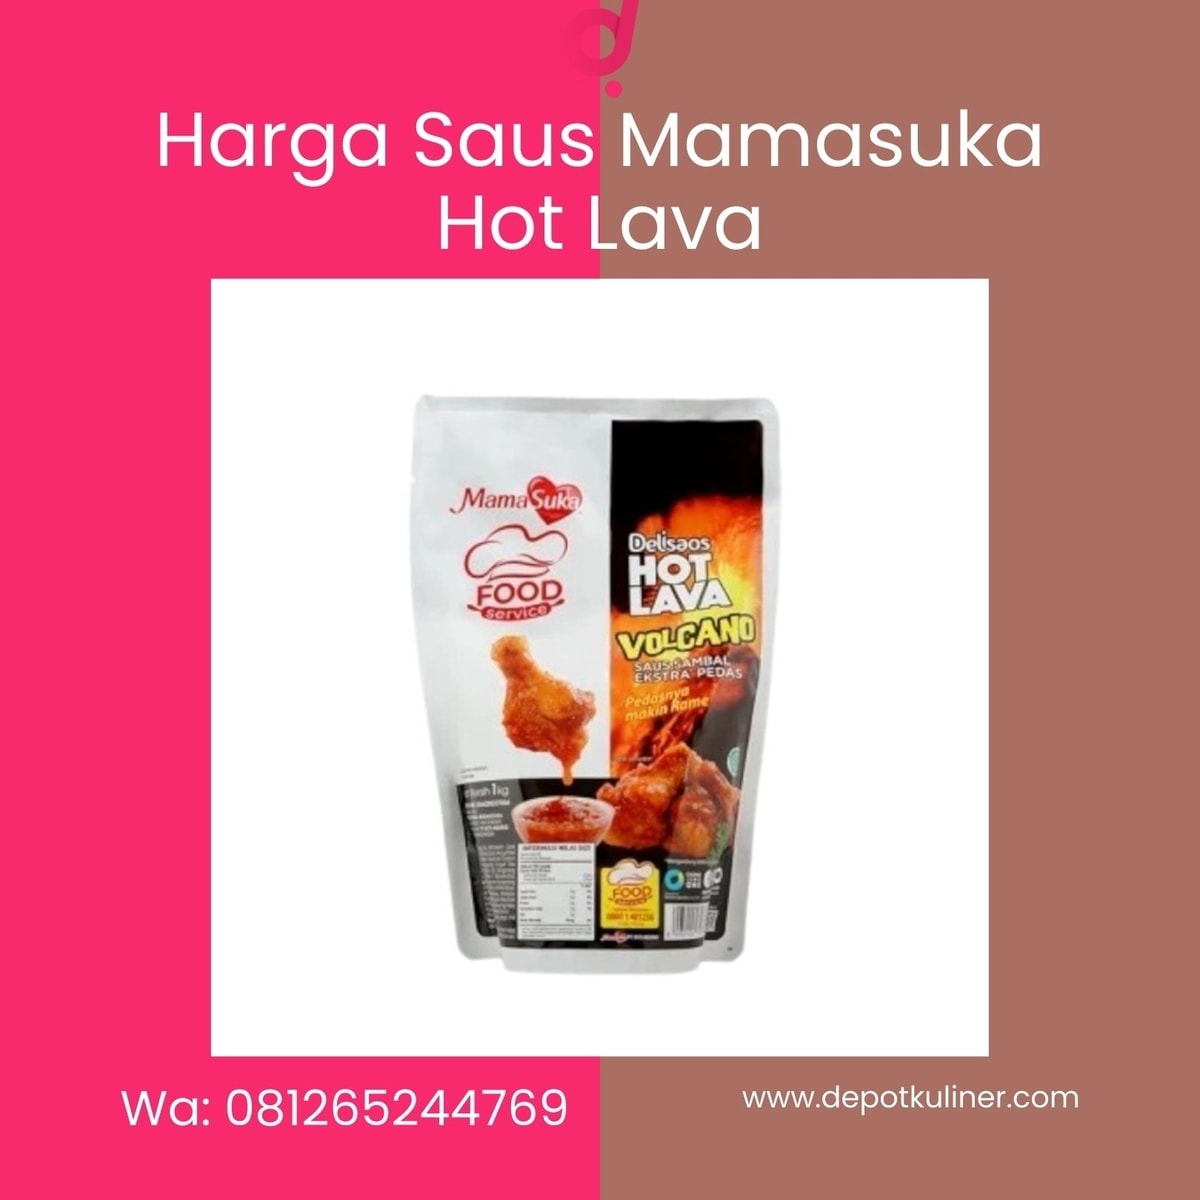 HARGA DISTRIBUTOR, Tlp 0812-6524-4769 Harga Saus Mamasuka Hot Lava